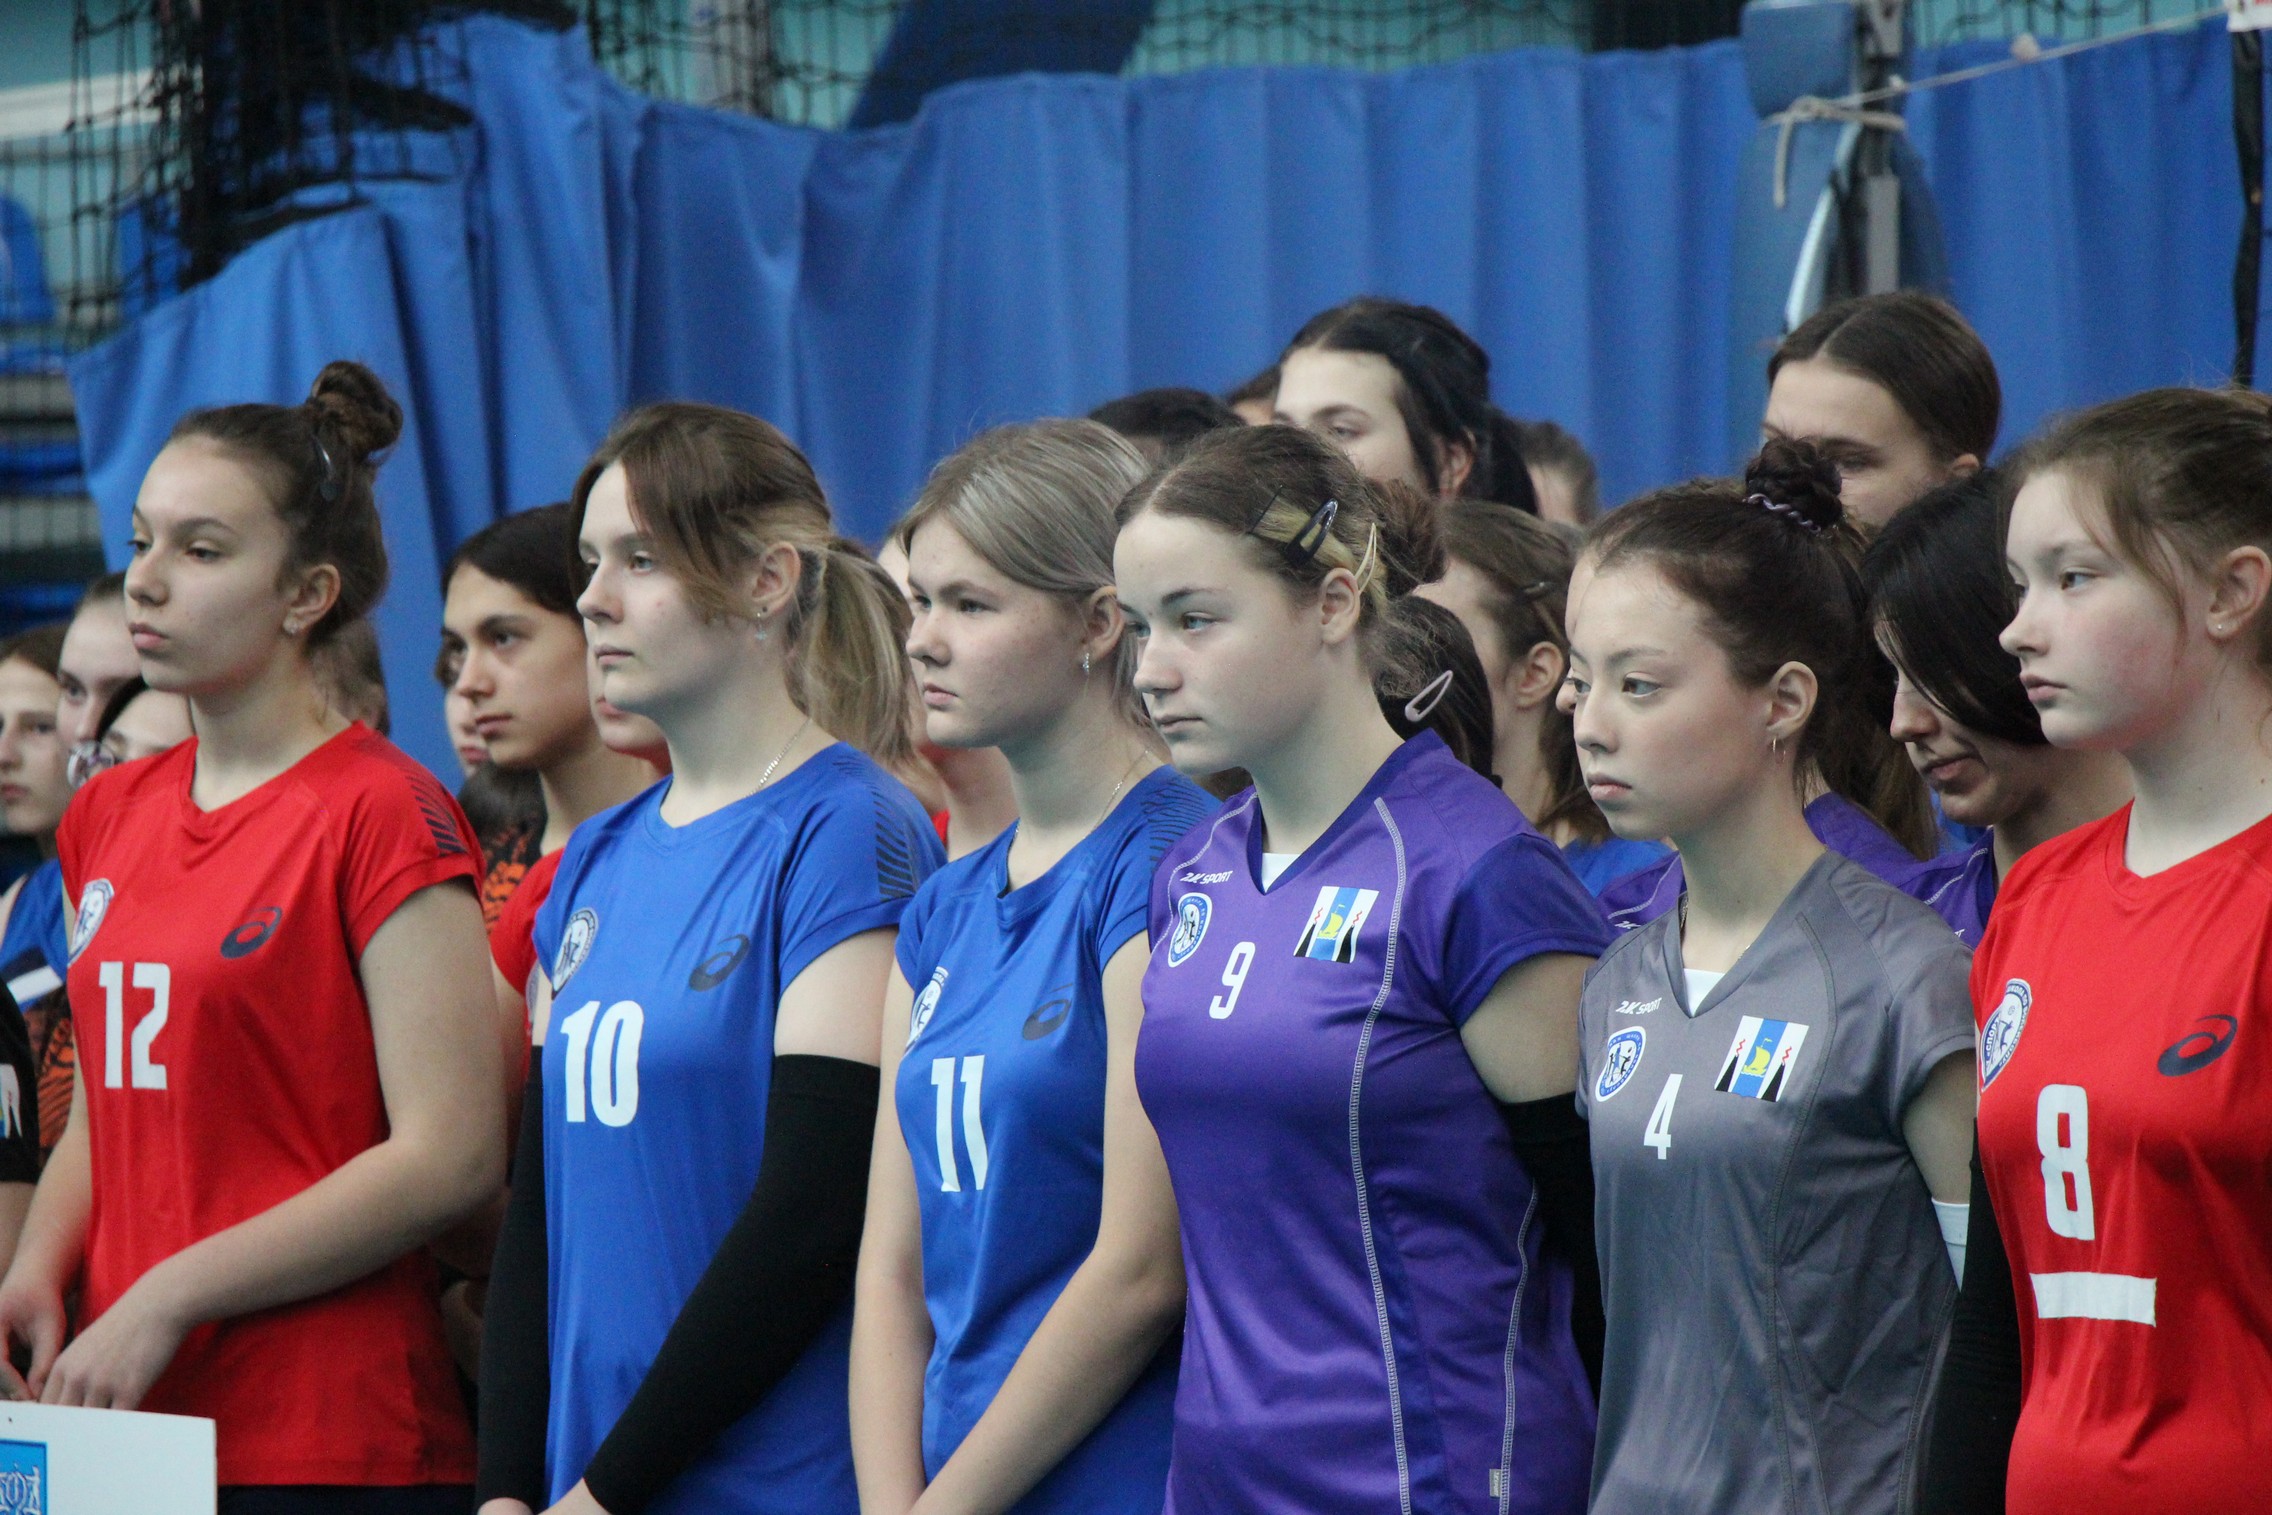 Первенство области по волейболу среди юношей и девушек 2007-2008 г.р.